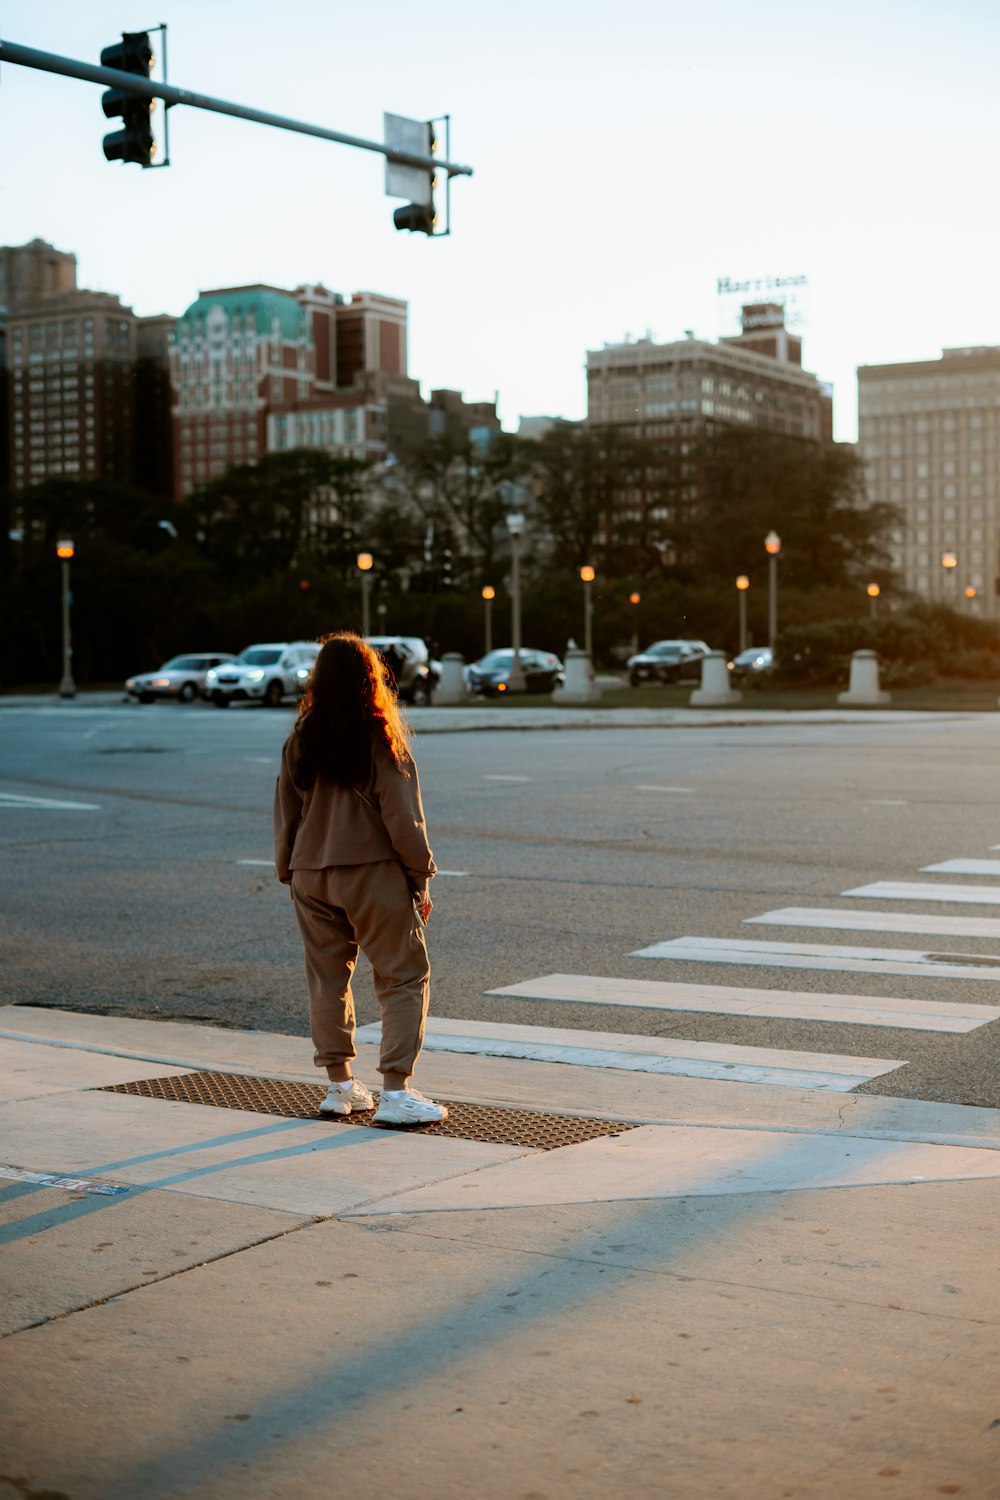 una persona parada en una esquina de la calle con un semáforo de fondo